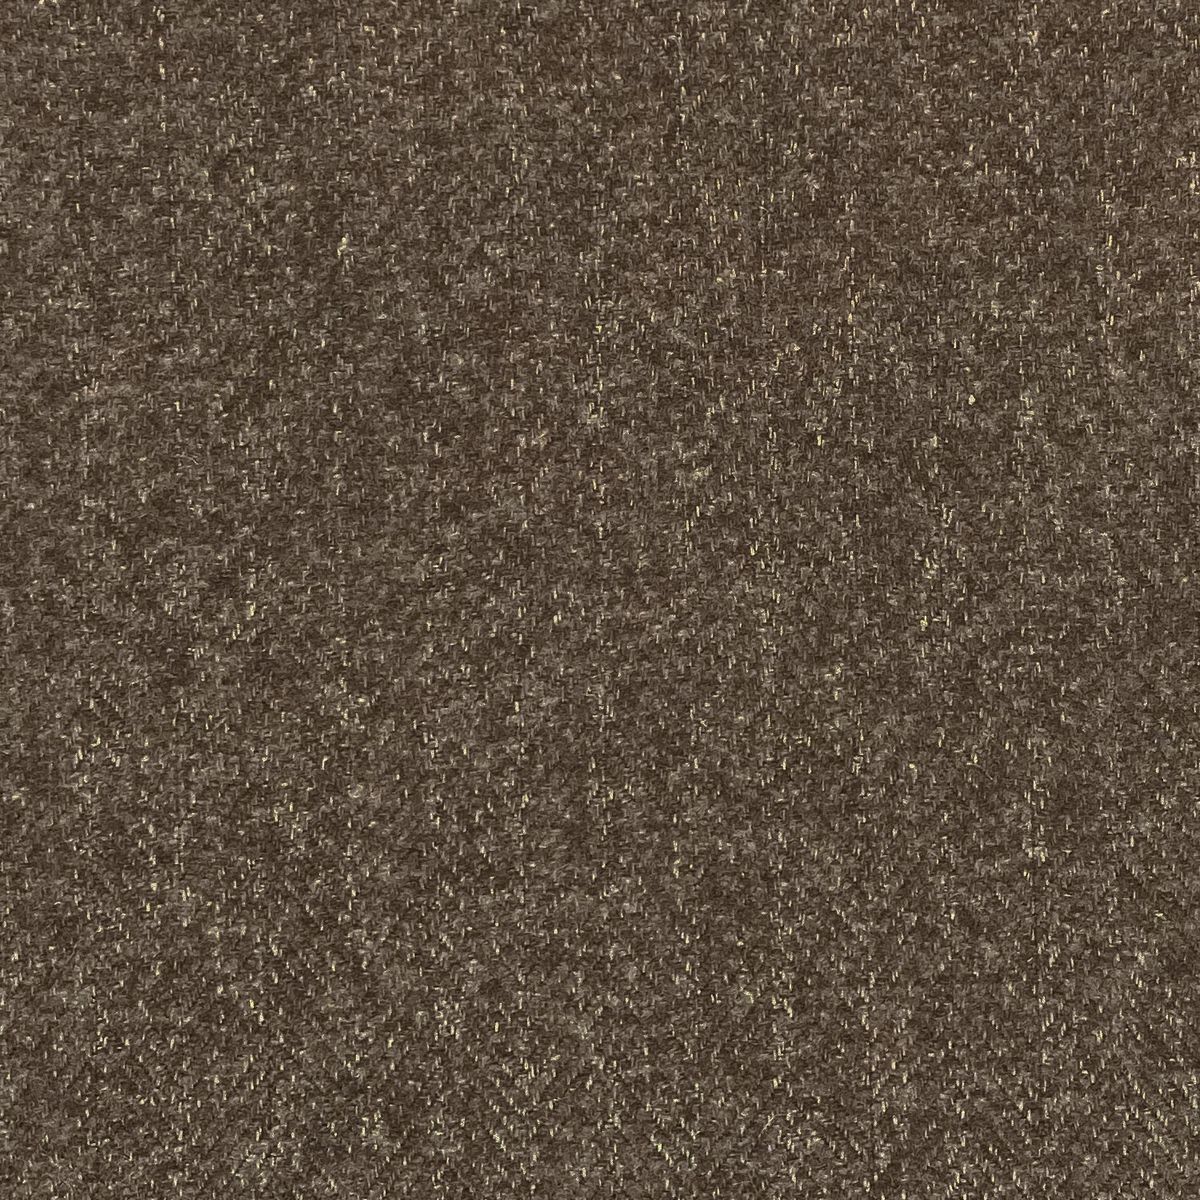 Tweed Walnut Fabric by Chatham Glyn